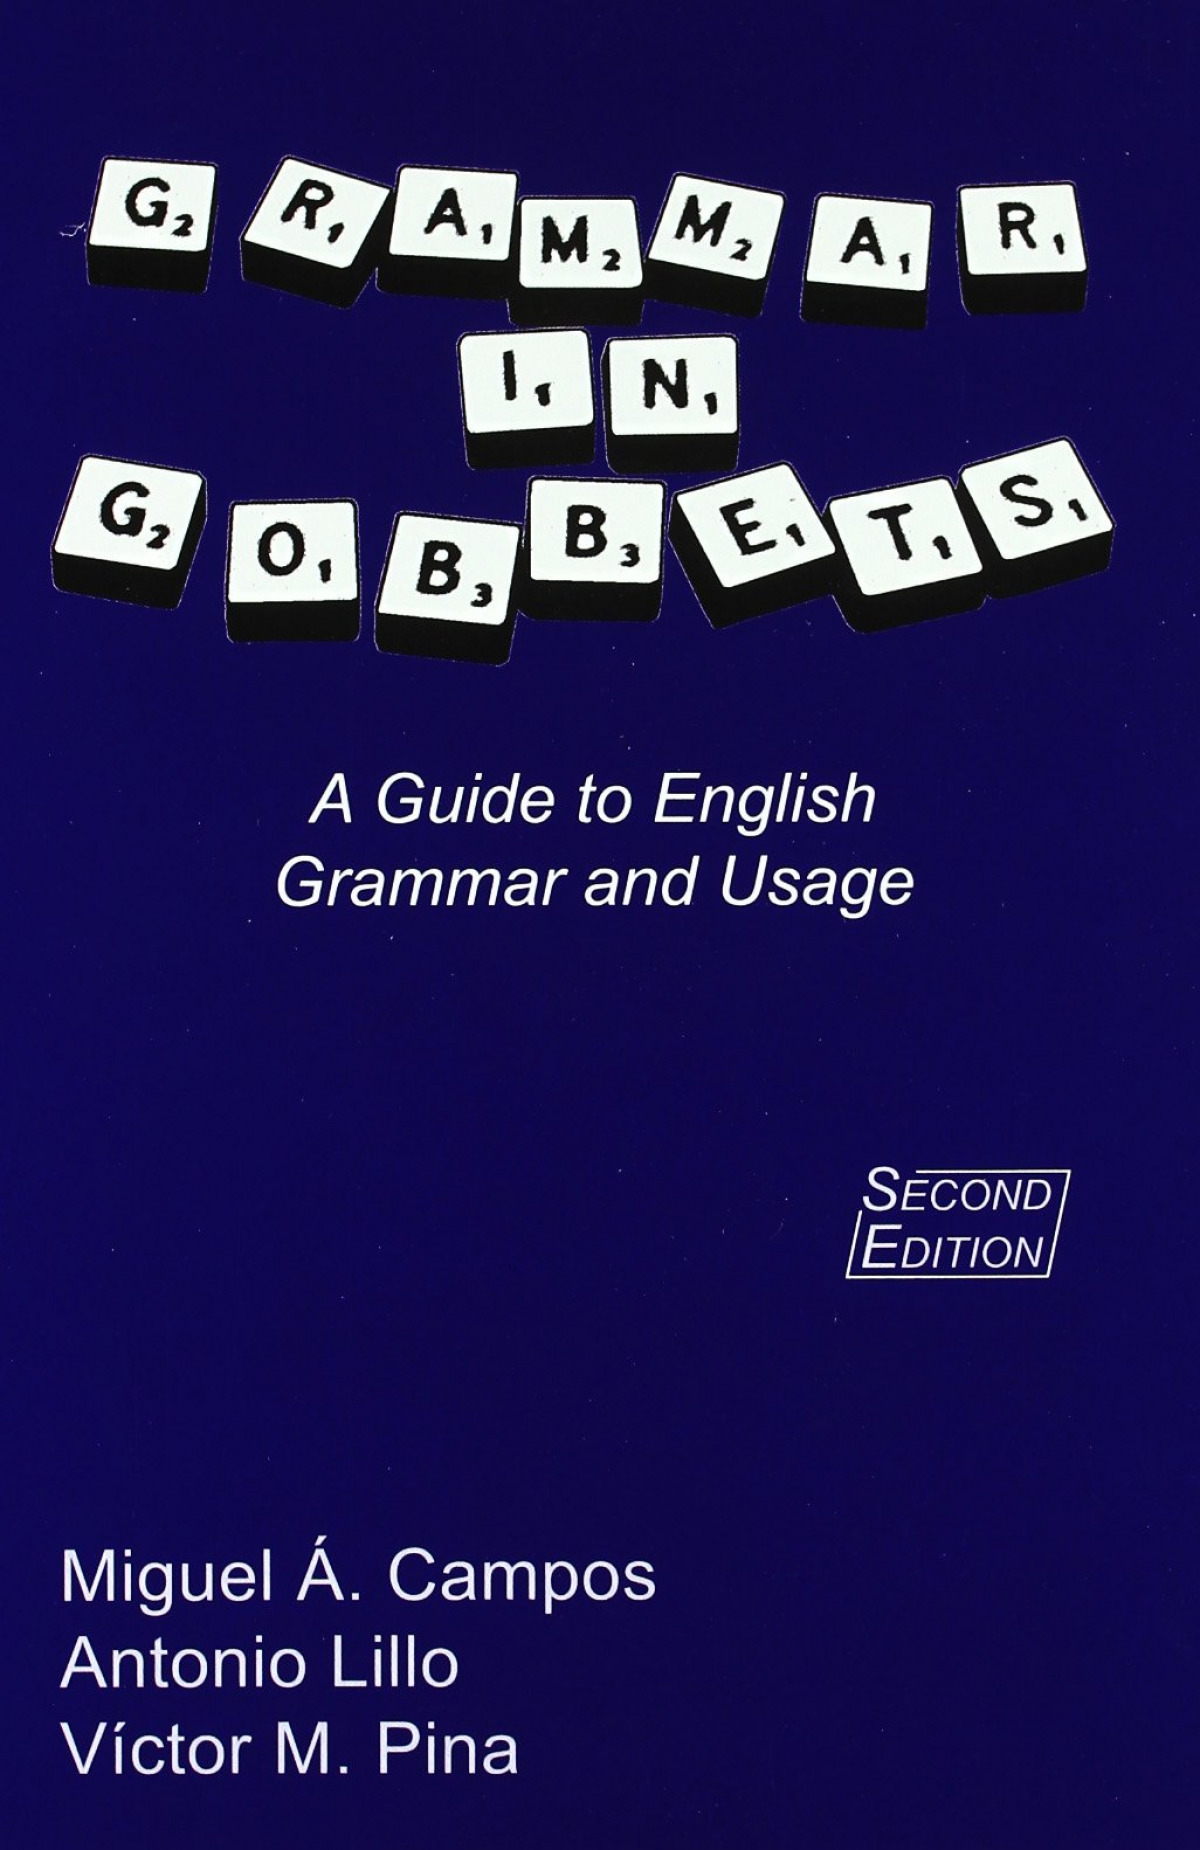 Grammar in gobbets - Campos Pardillos, Miguel Angel / Lillo Buades, Antonio / Pina Medina, Víctor Manuel